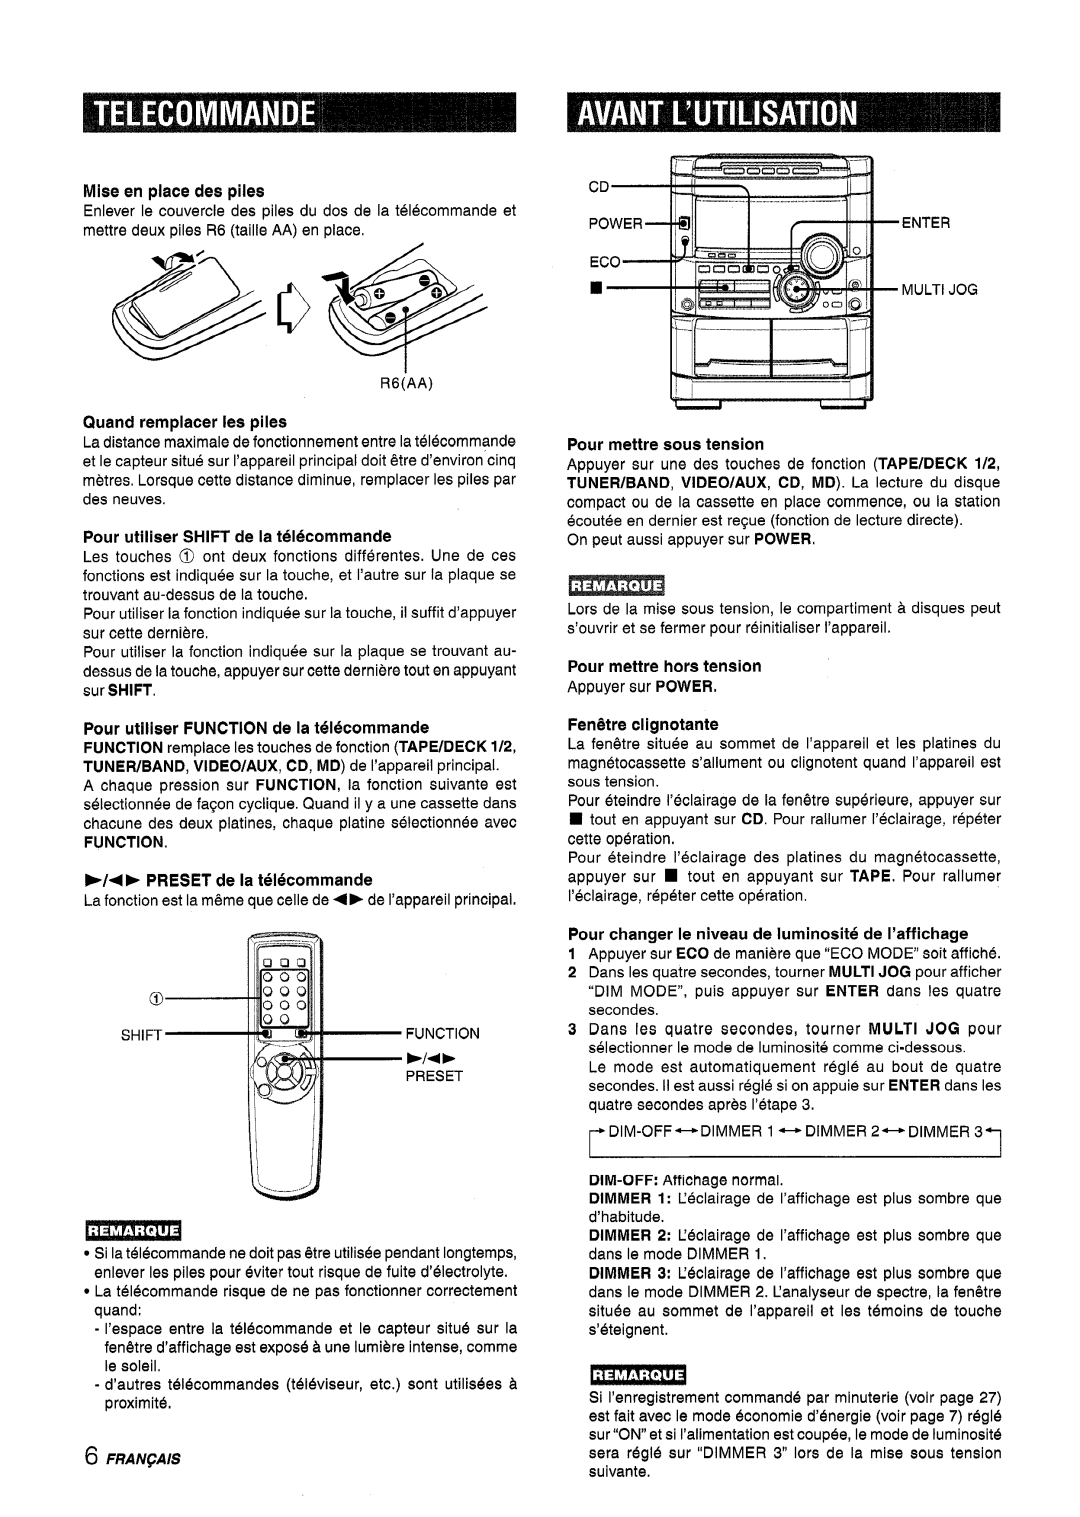 Sony NSX-A767 manual Pour utiliser FUNCTION de la telecommande, E/+P PRESET de la telecommande, Mise en place des piles 